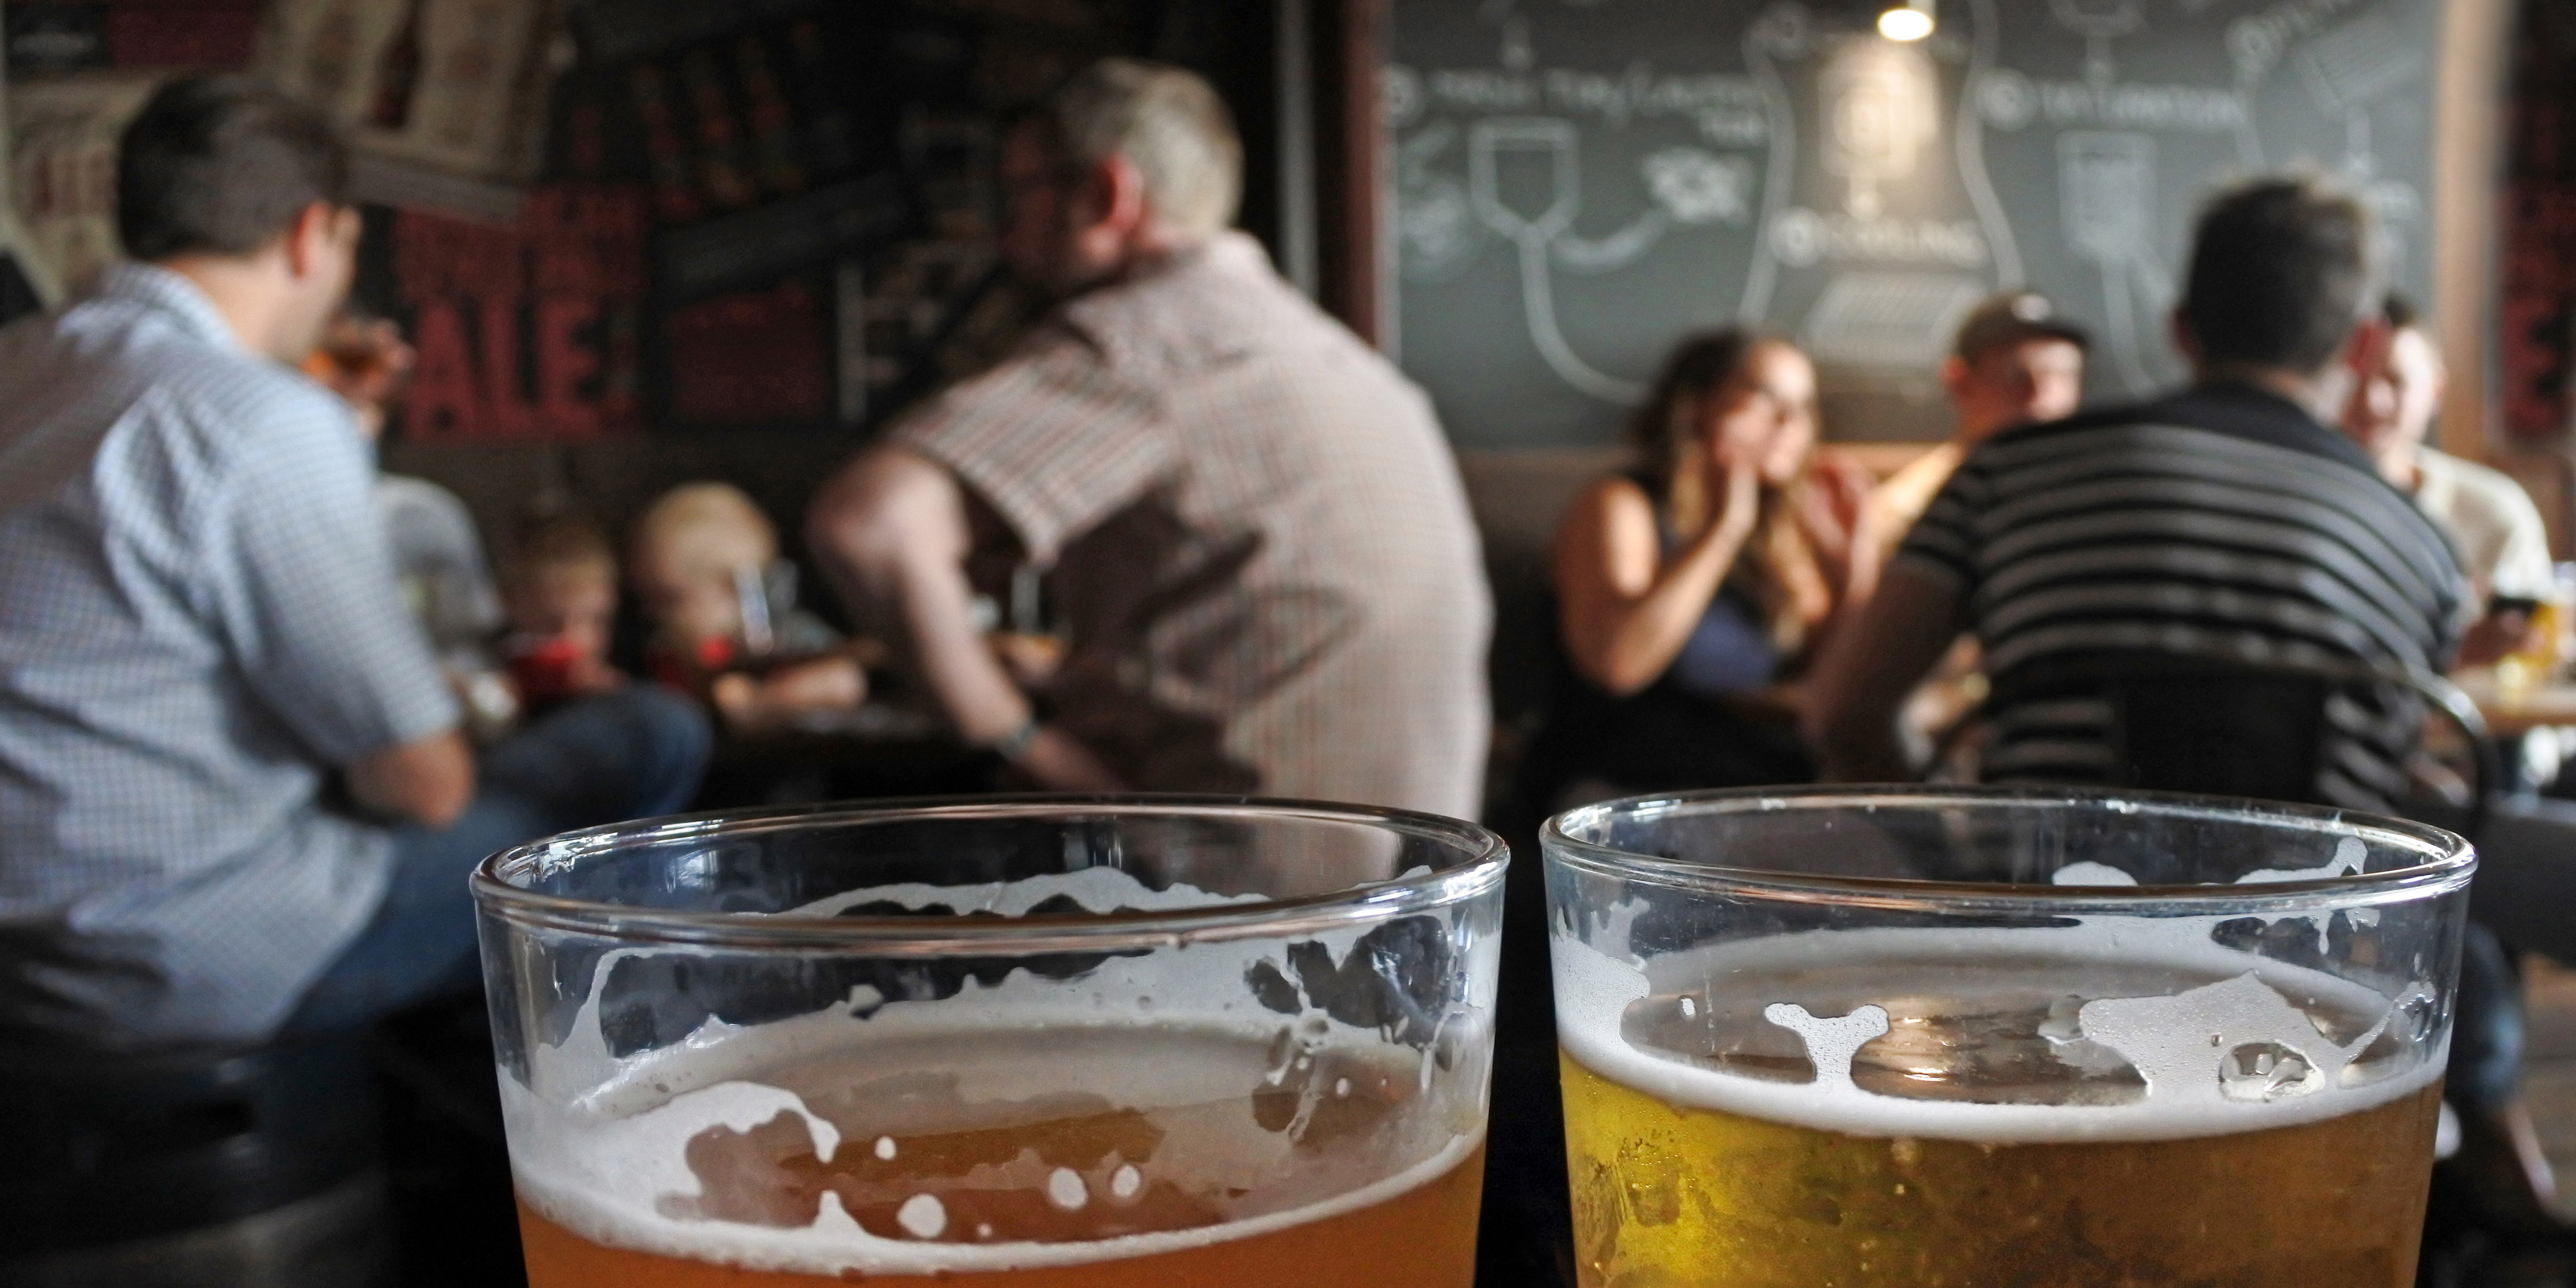 El consumo nocivo de alcohol mata a más de 3 millones de personas al año, en su mayoría hombres. (Foto: Adobe Stock)